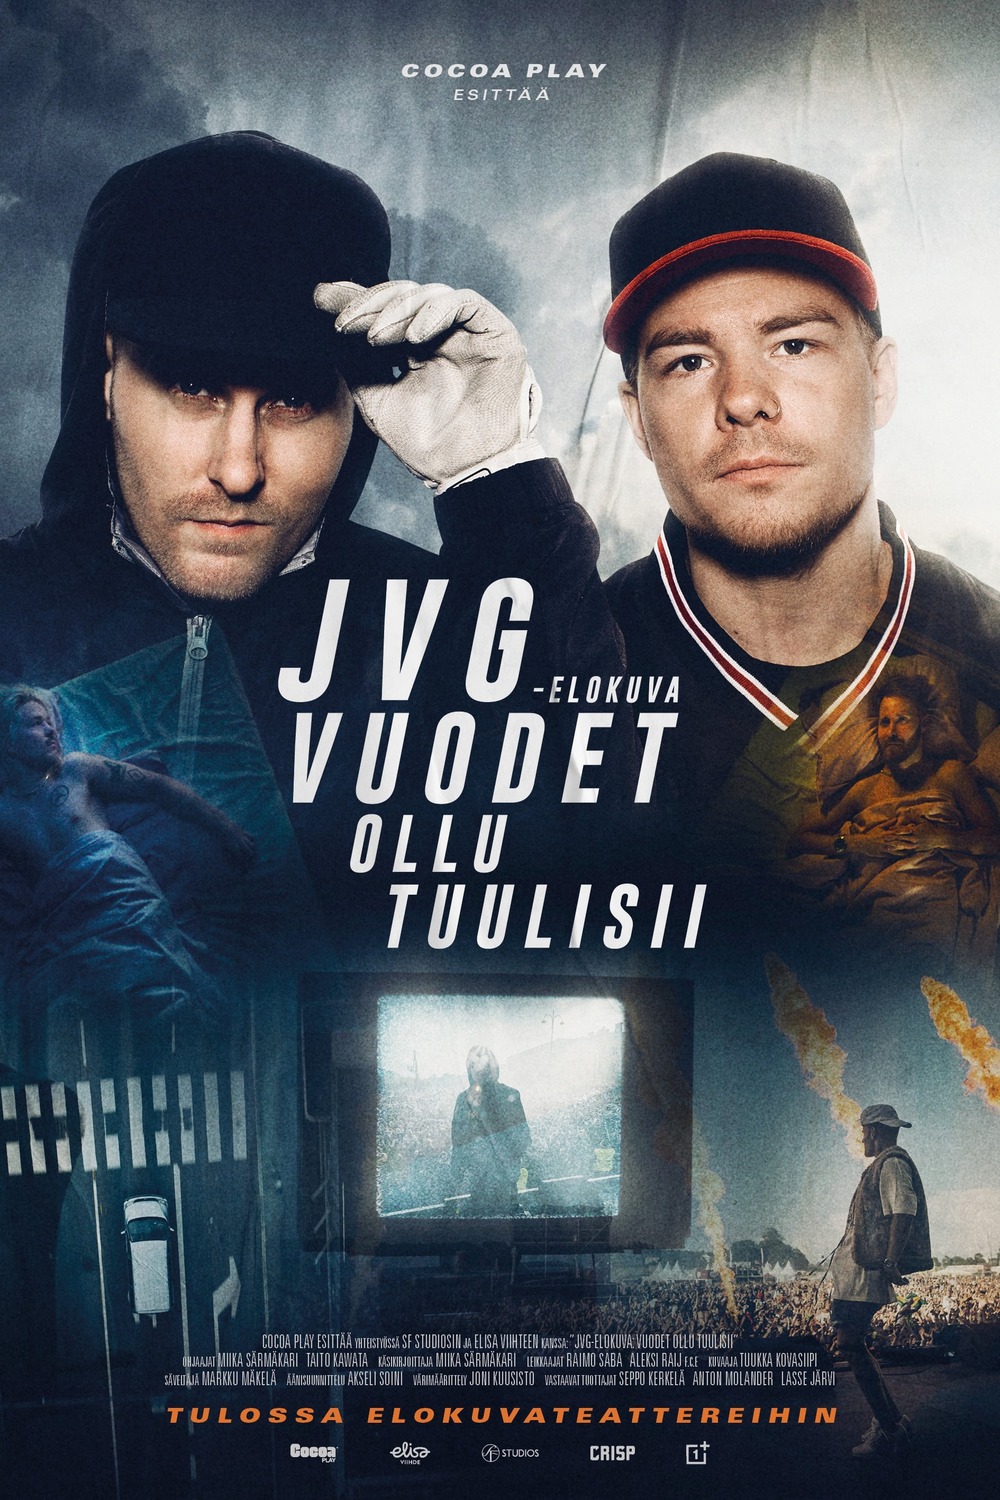 Extra Large Movie Poster Image for JVG-elokuva: Vuodet ollu tuulisii 